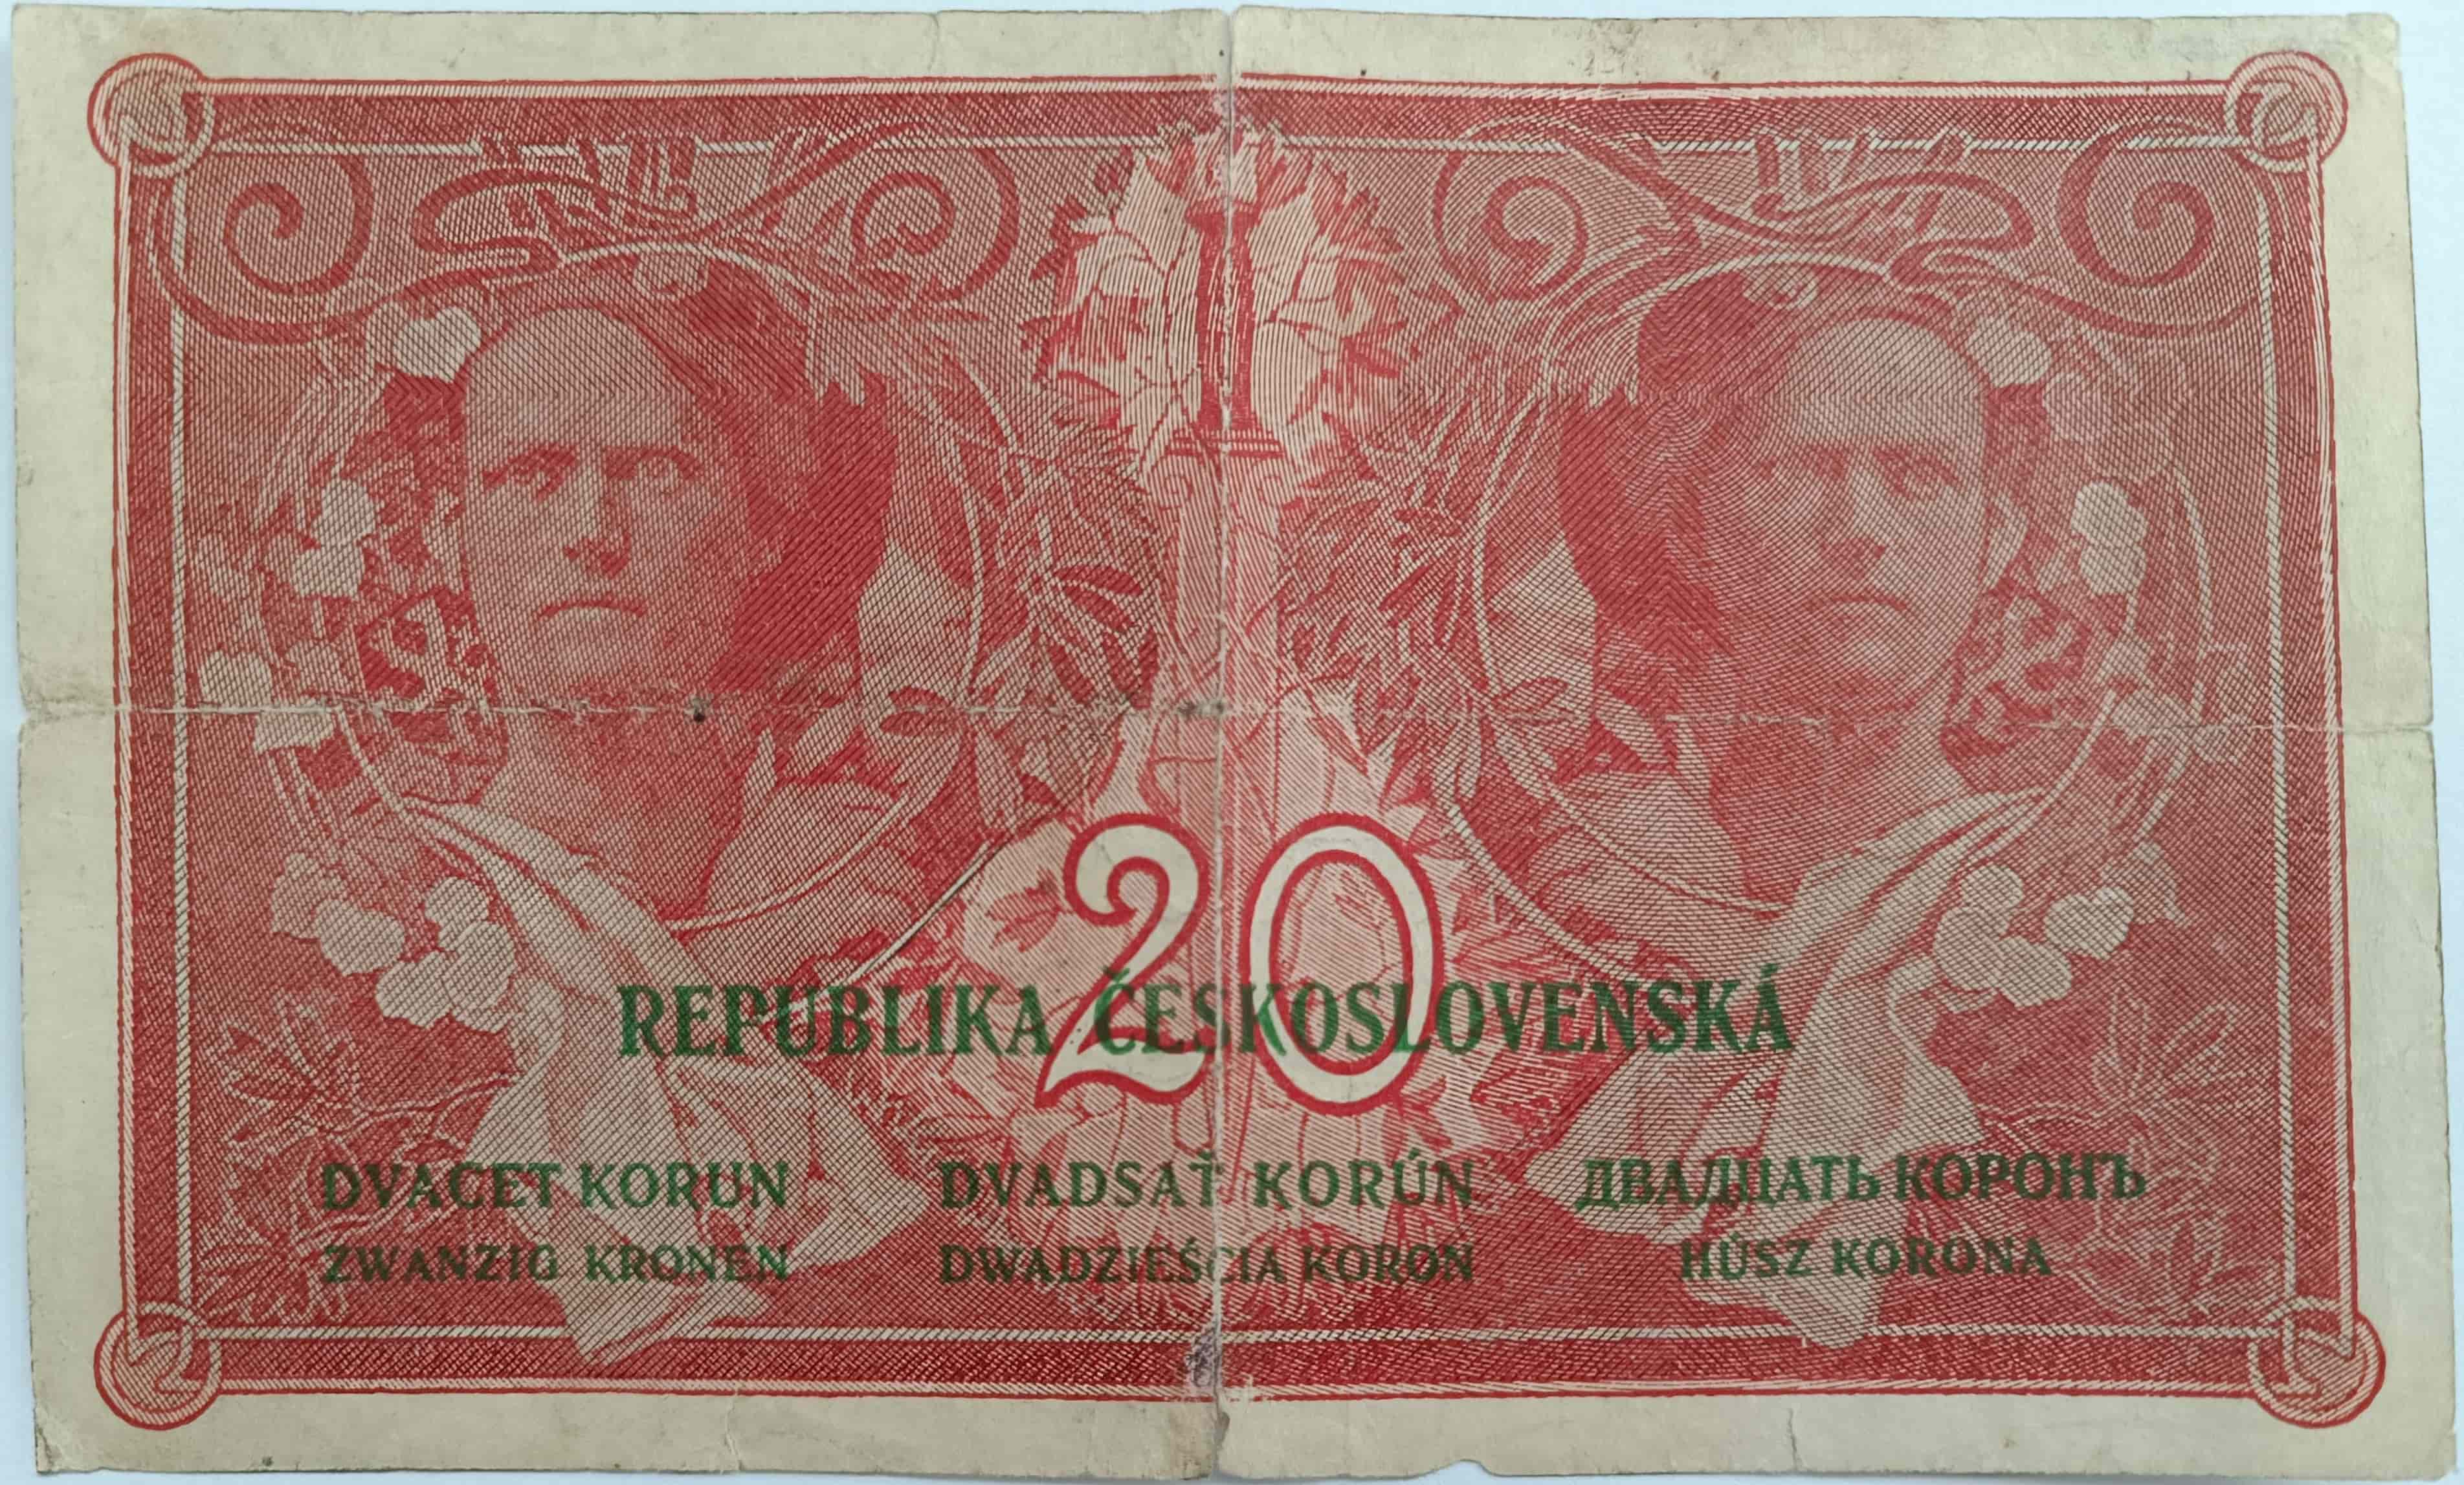 20 Kč 1919 P217